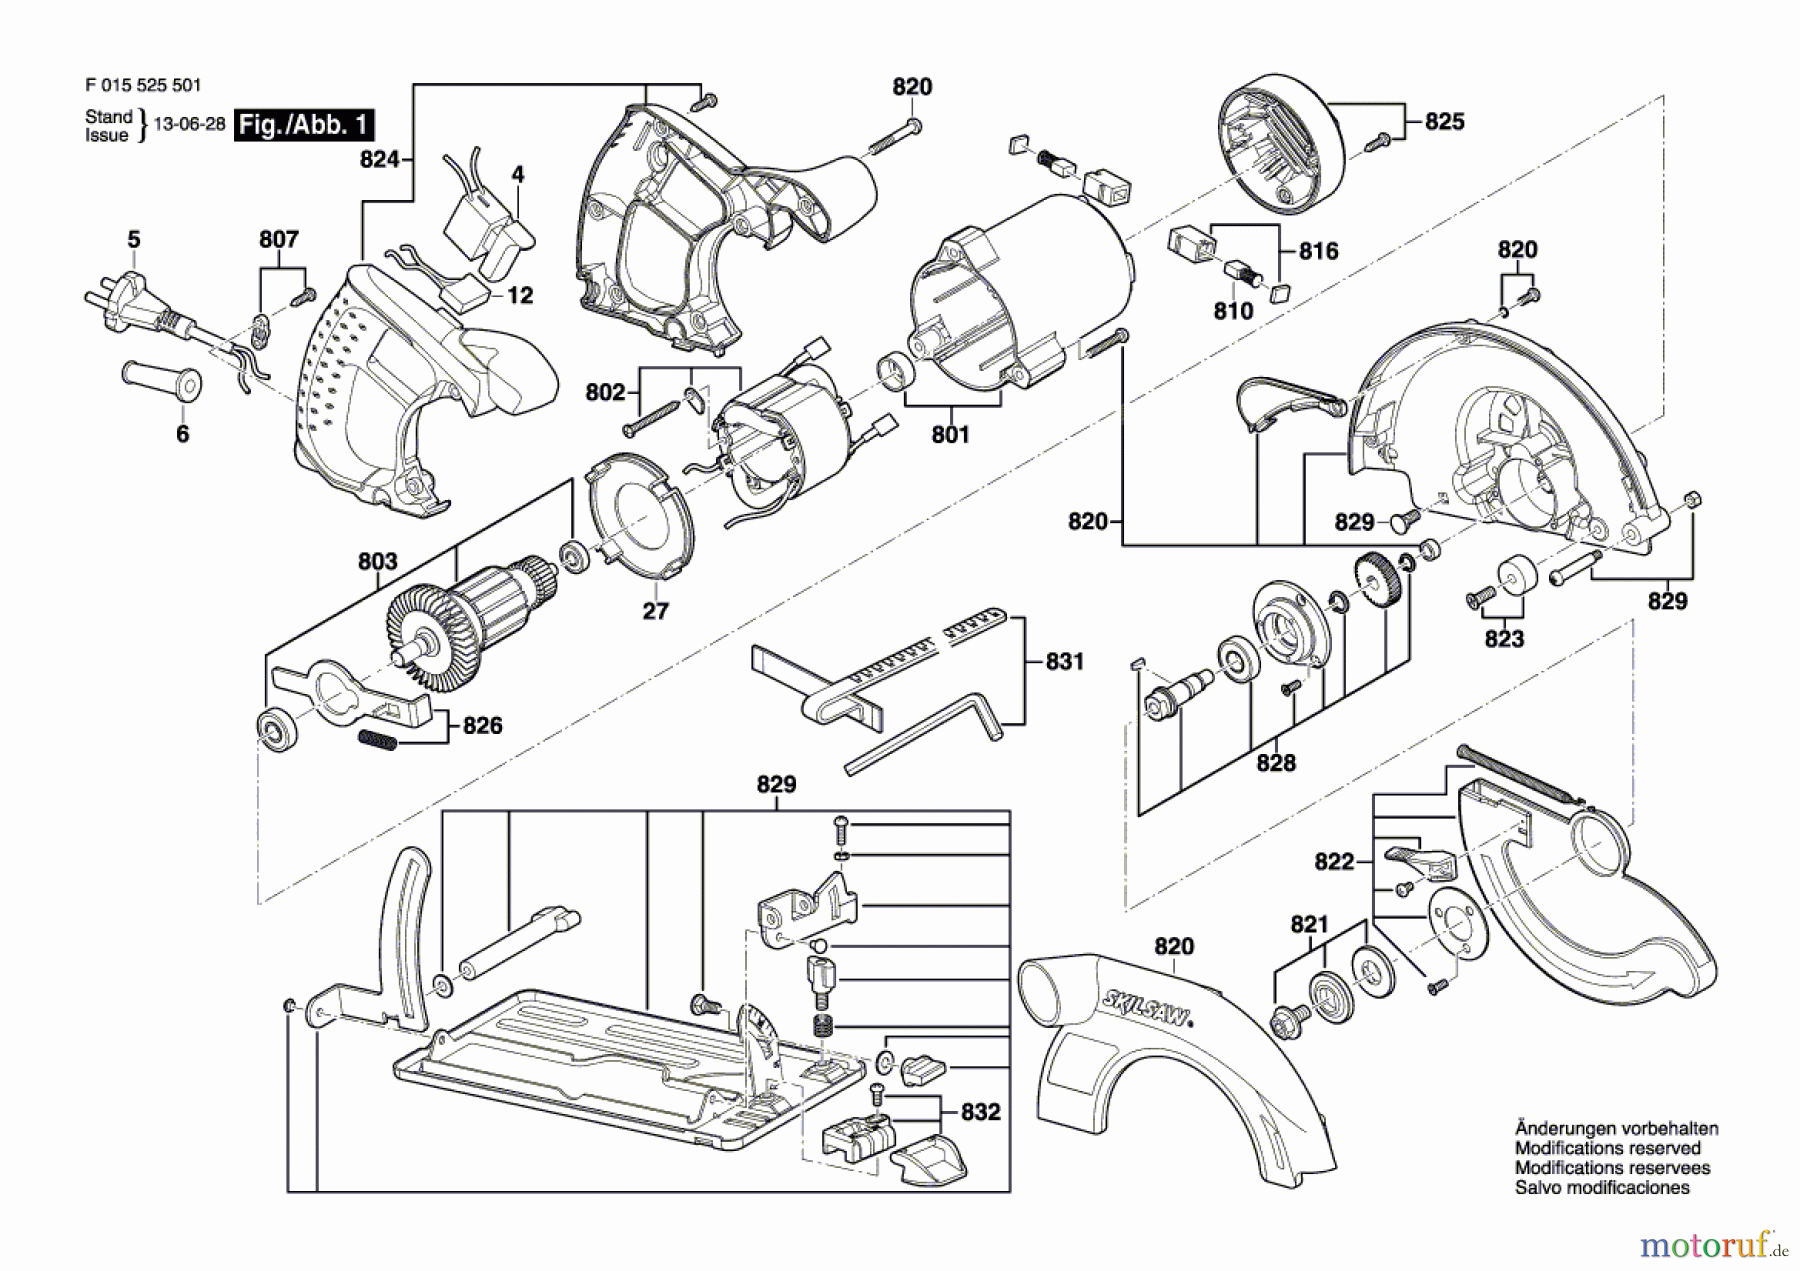  Bosch Werkzeug Handkreissäge 5765 Seite 1